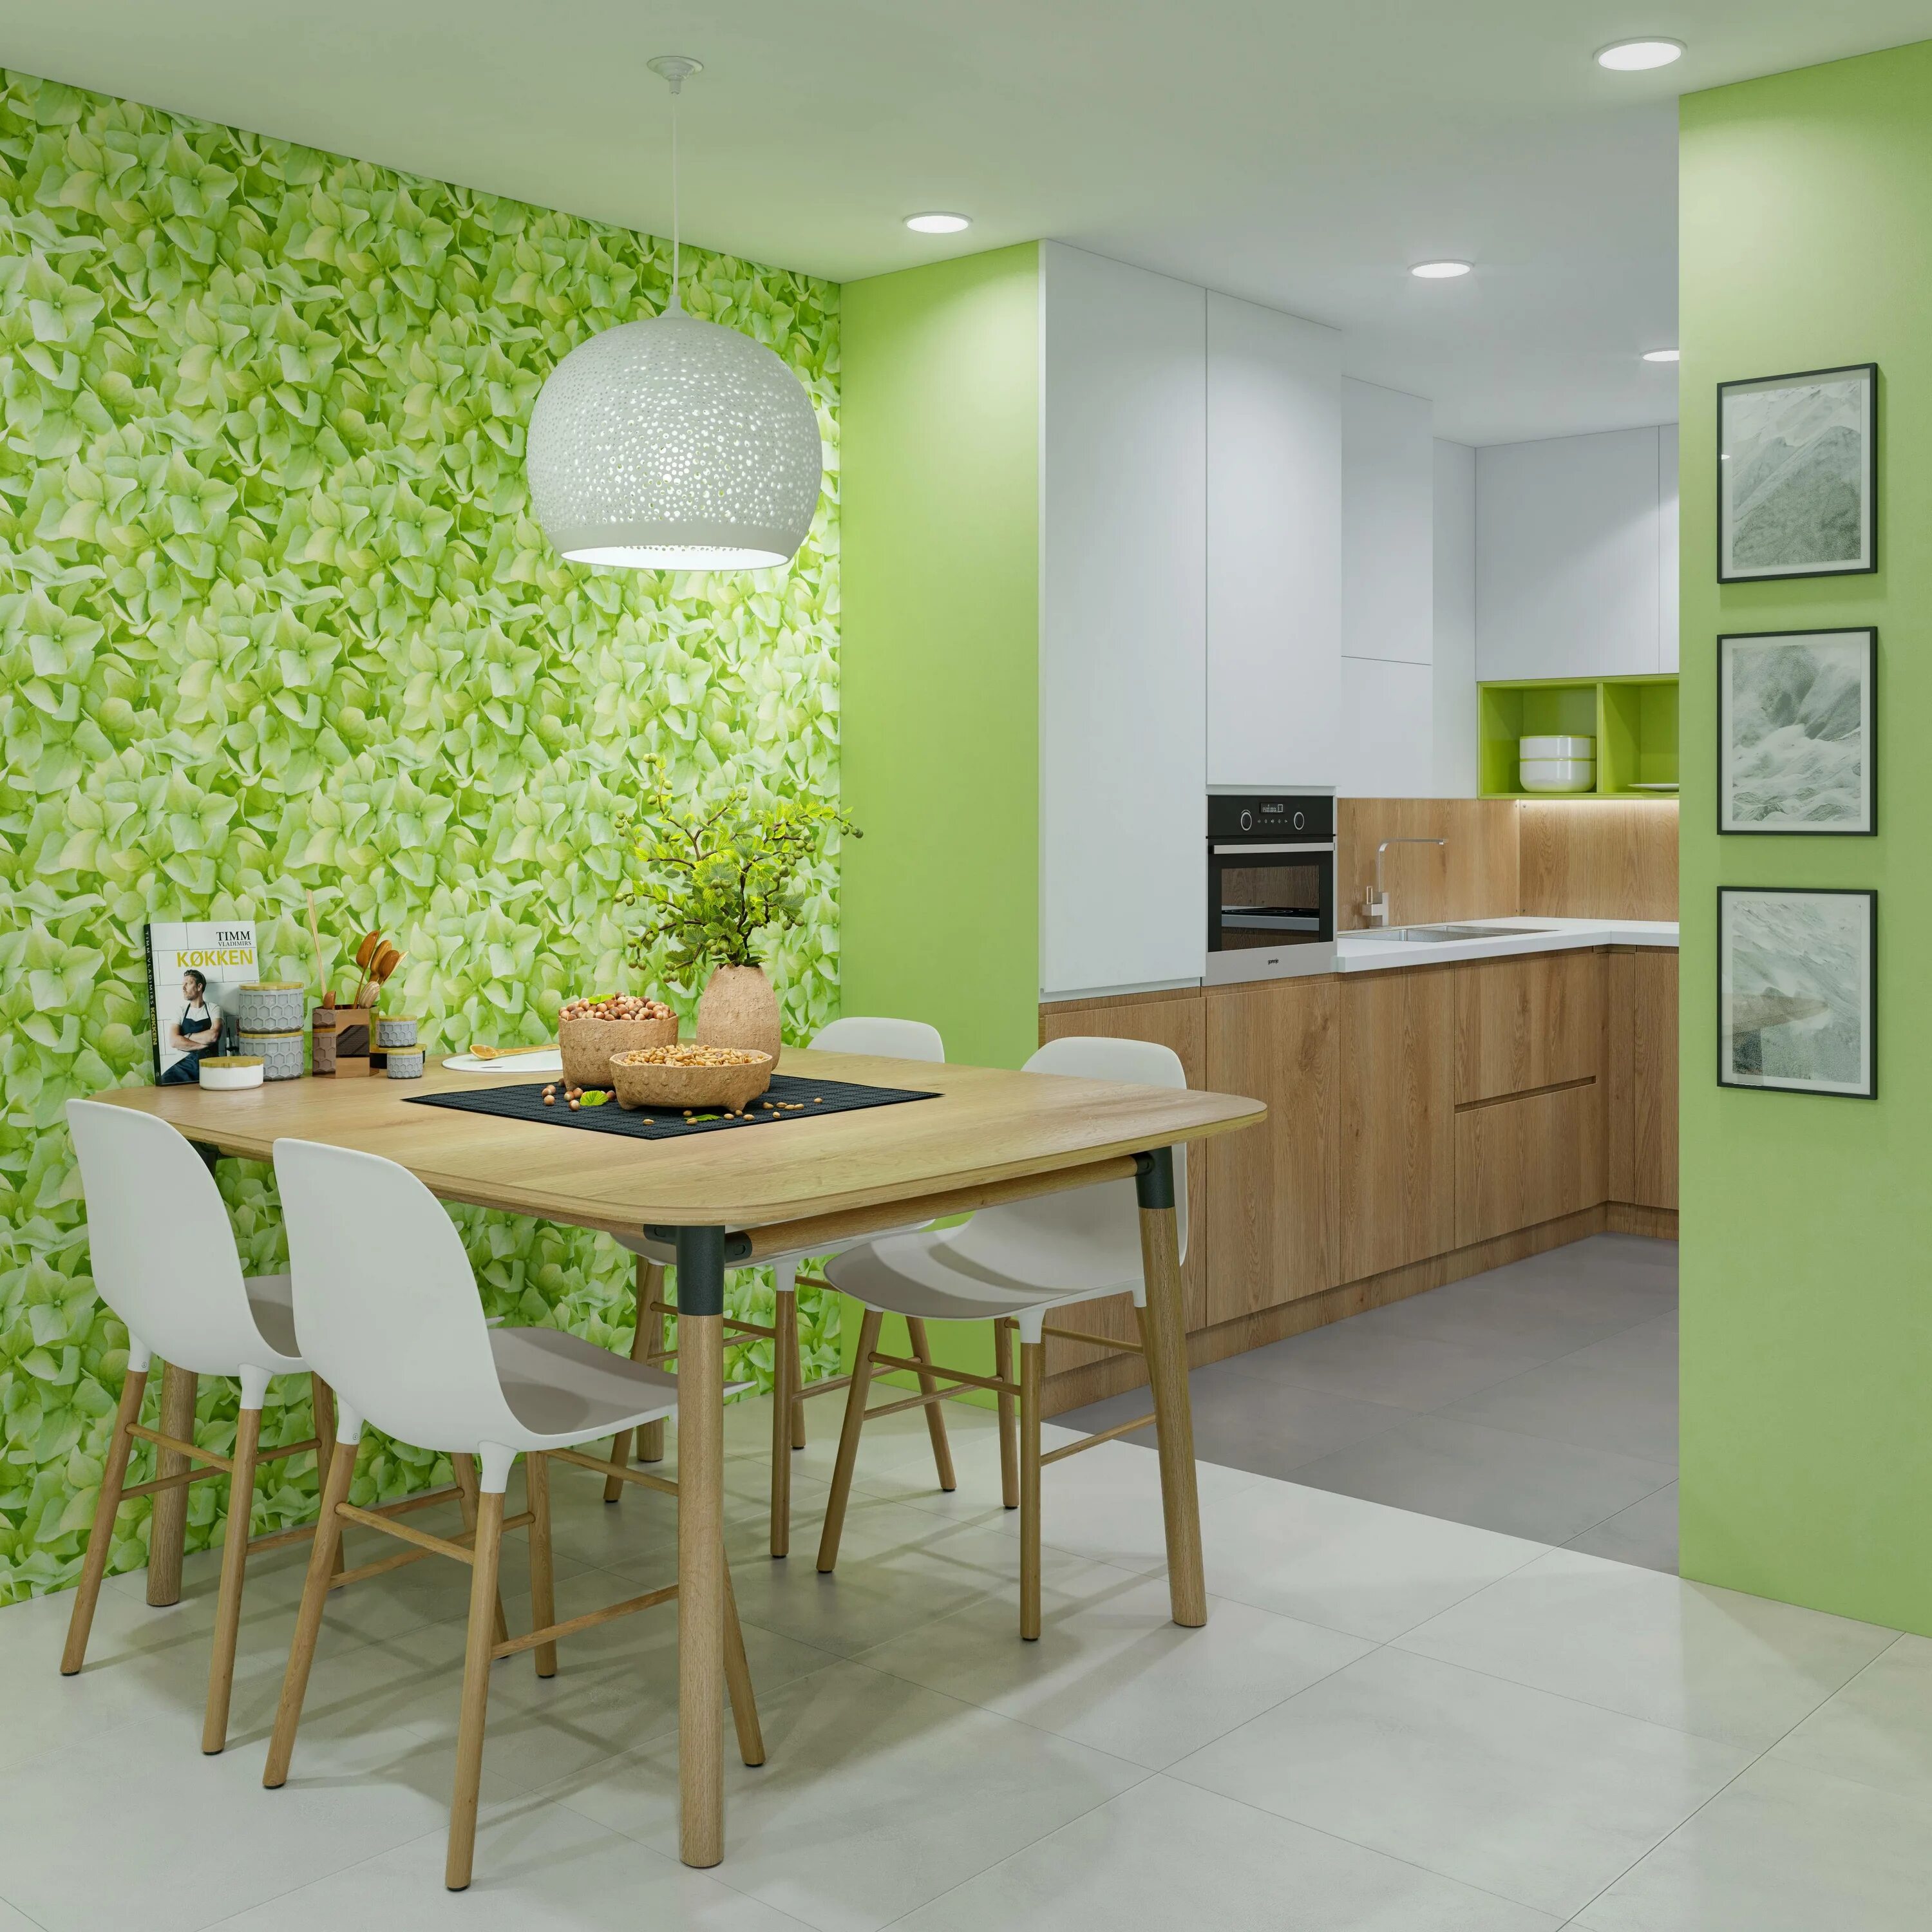 Кухни обклеенные обоями. Расцветка обоев для кухни. Обои в интерьере кухни. Кухня в зеленых тонах. Салатовые стены на кухне.